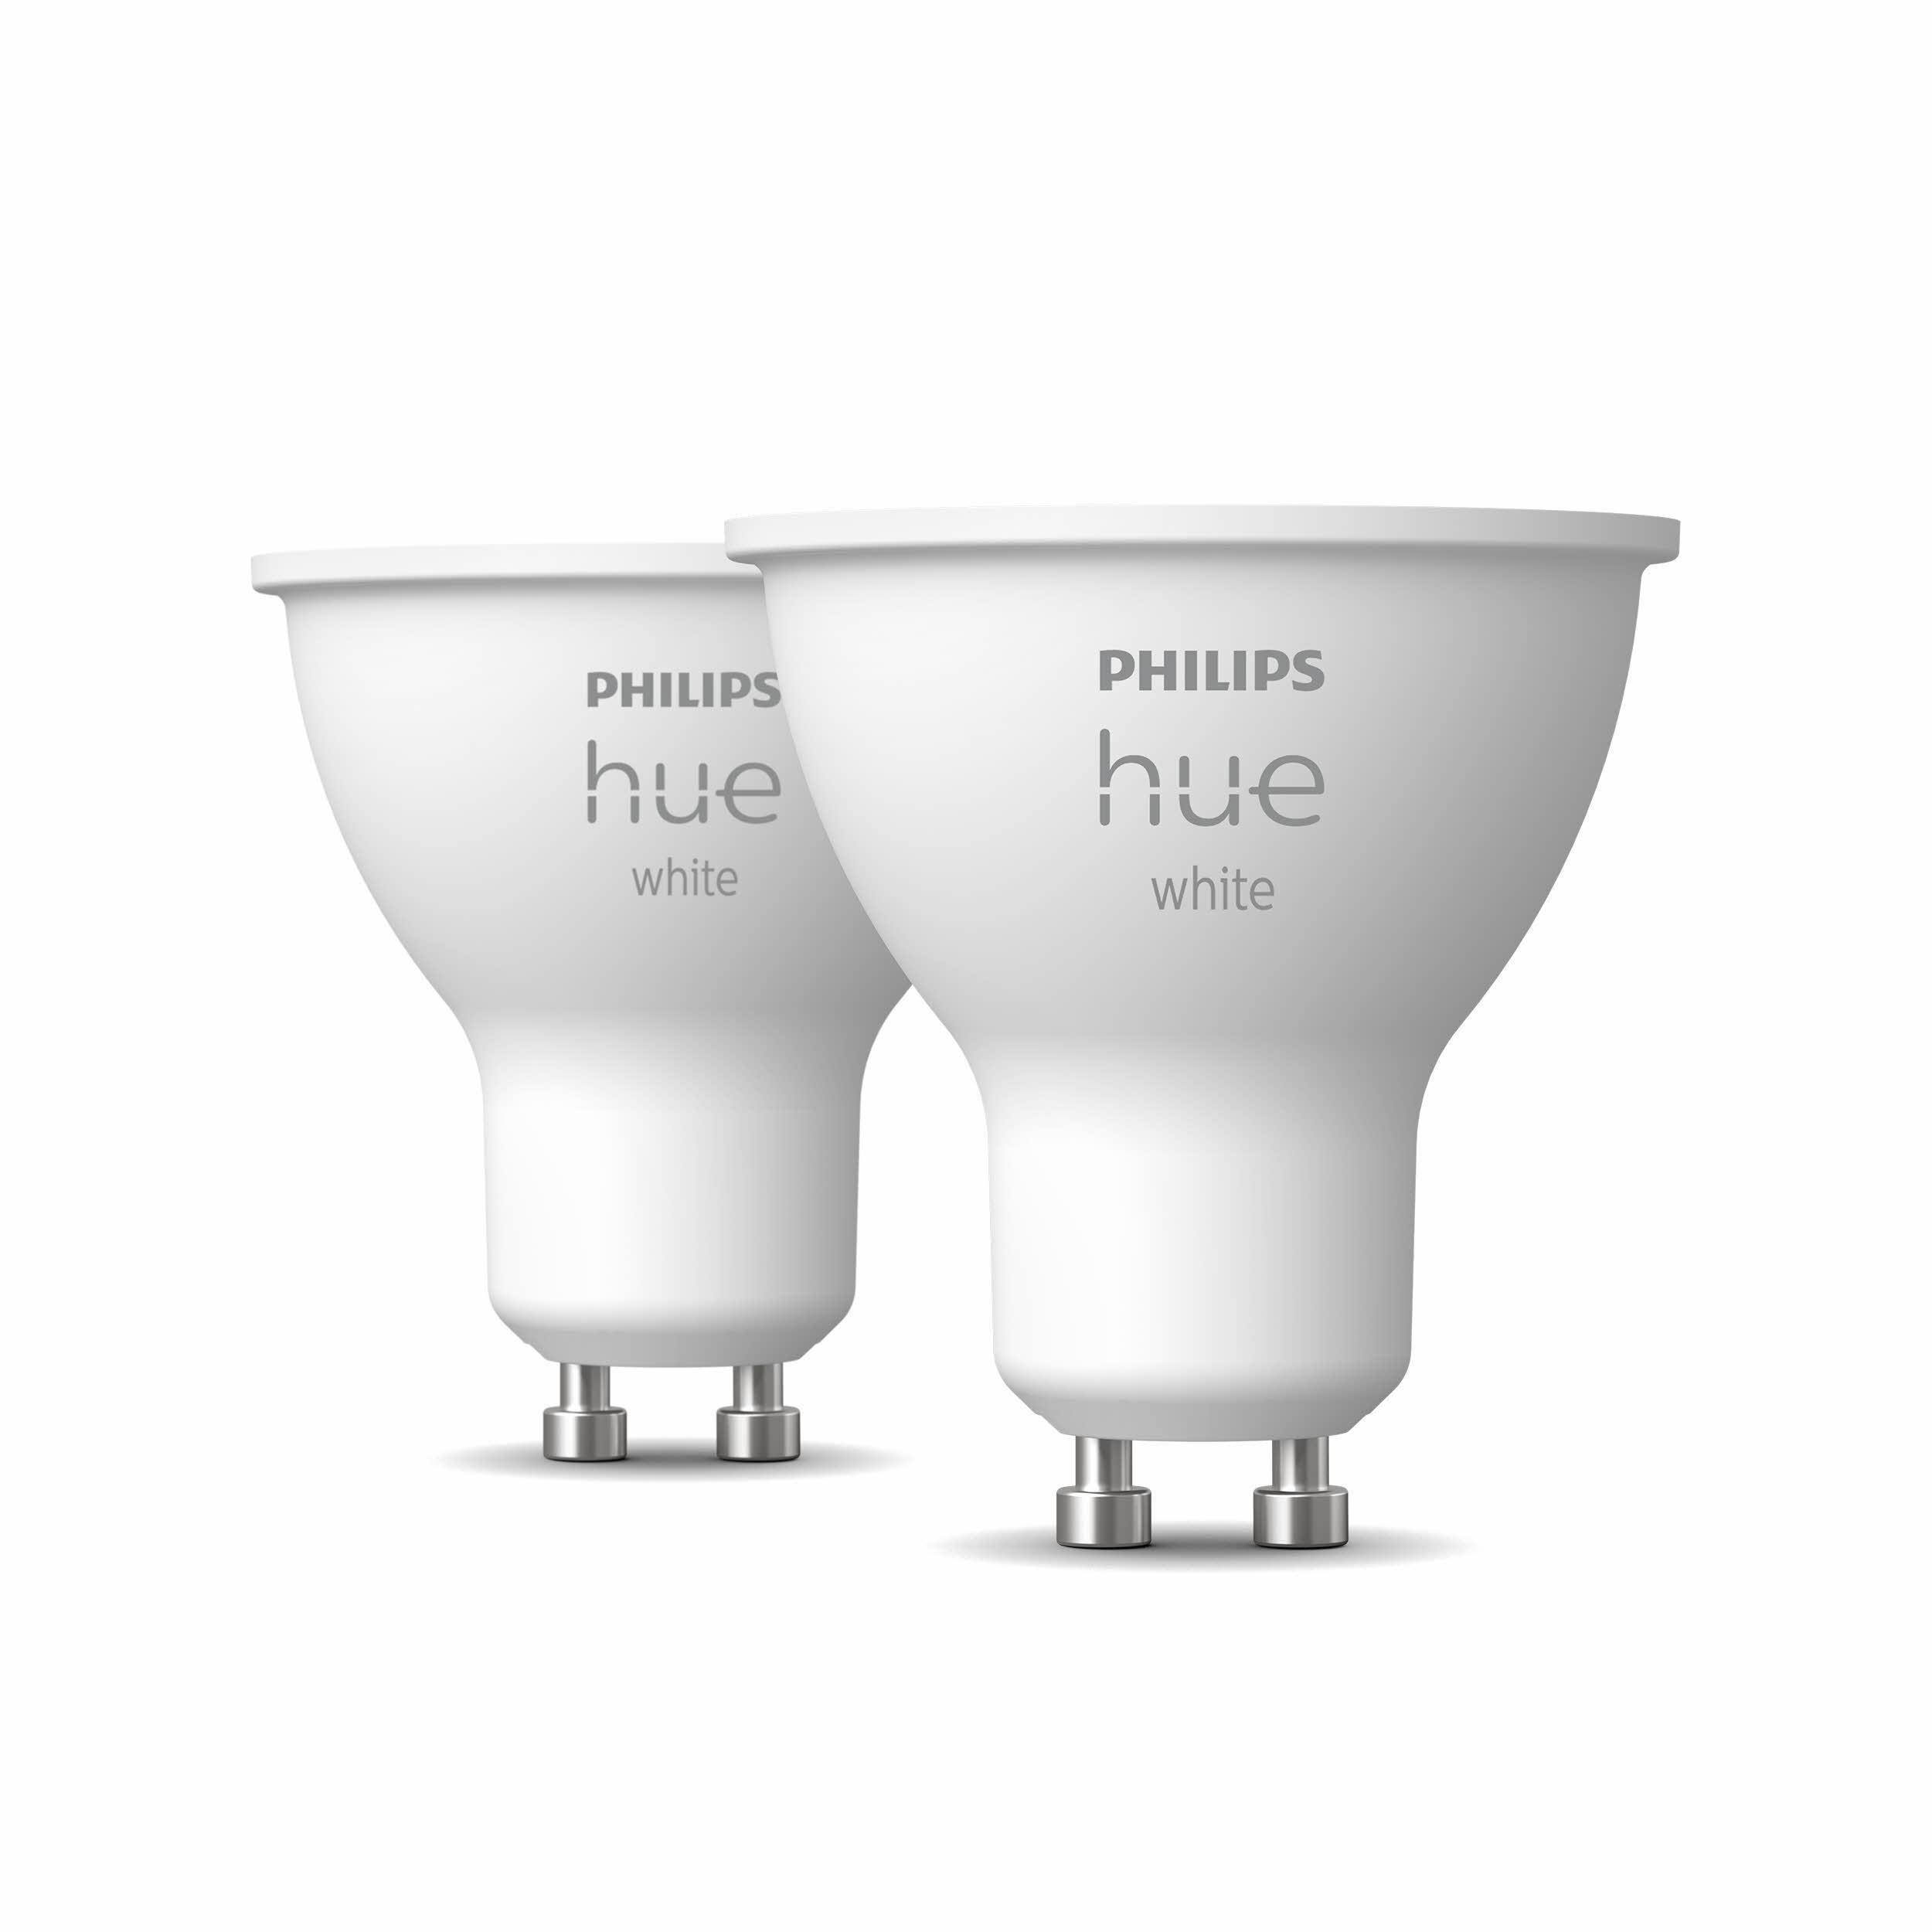 White PHILIPS GU10 LED Warmweiß Doppelpack Hue Lampe